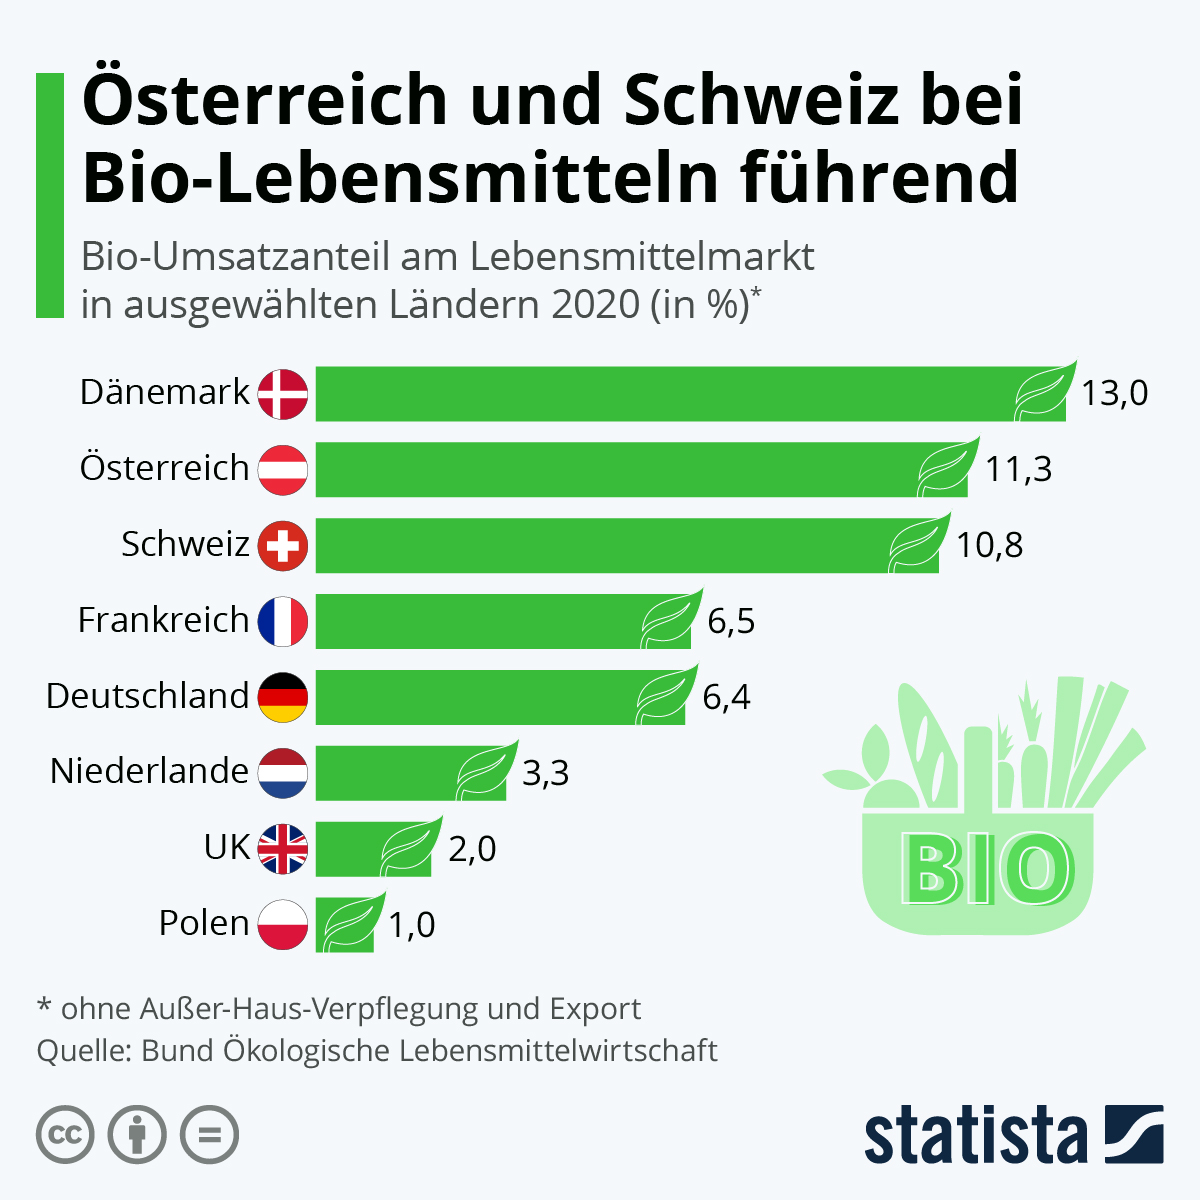 Gefühlt ist Bio überall. Tatsächlich machen Lebensmittel aus ökologischer Produktion aber nur einen Bruchteil des Lebensmittelmarktes aus, wie der Branchenreport 2022 – Ökologische Lebensmittelwirtschaft zeigt. Am höchsten ist der Umsatzanteil von Bio-Produkten mit 13 Prozent in Dänemark. Gleich dahinter folgen Österreich und die Schweiz mit jeweils über zehn Prozent. Dagegen steht Deutschland mit 6,4 Prozent in Europa nur an siebter Stelle. 